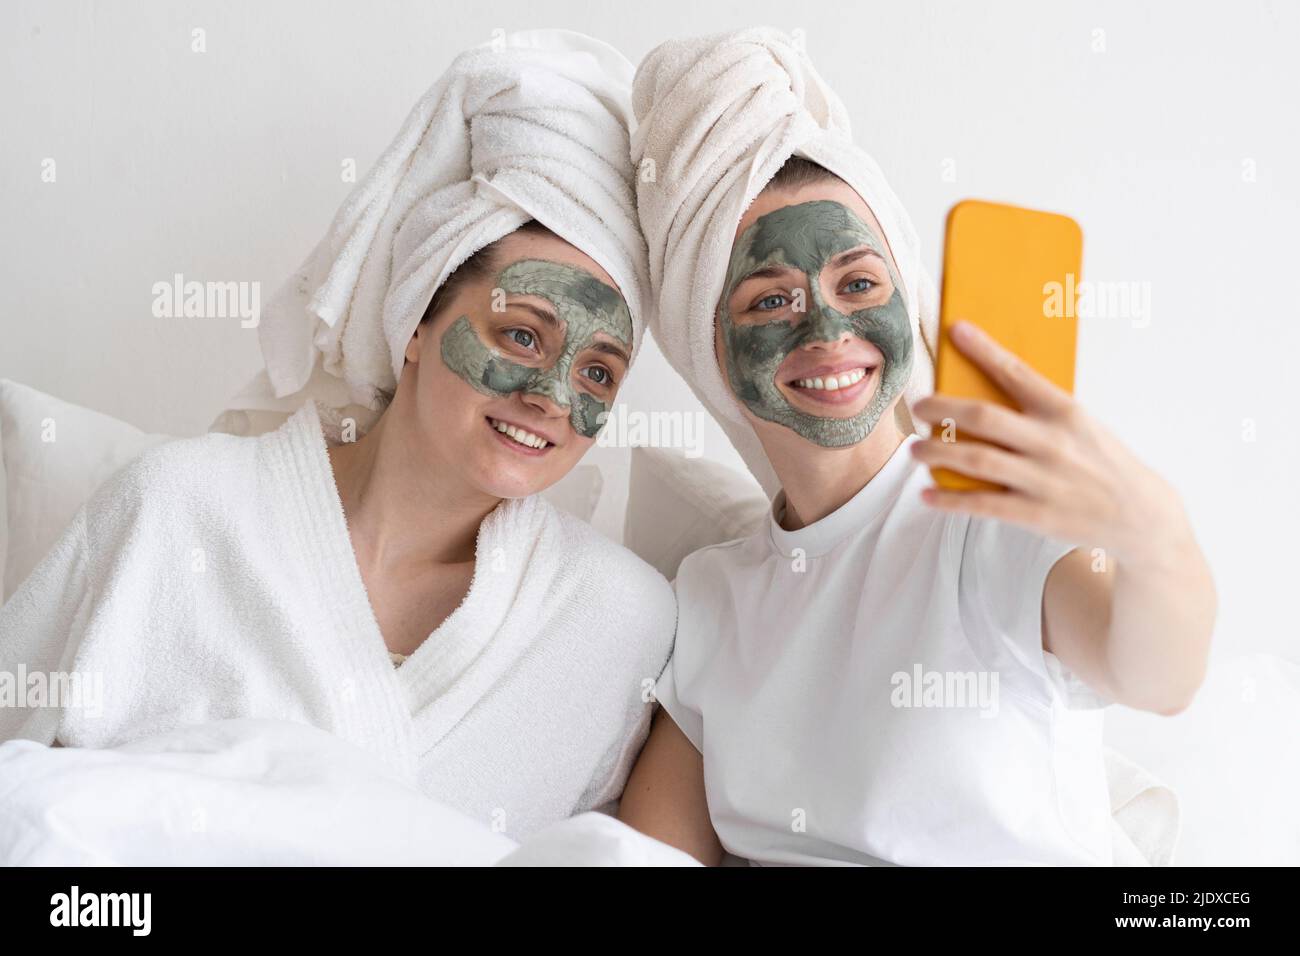 Des amis heureux portant un masque facial emportant un selfie sur un smartphone Banque D'Images